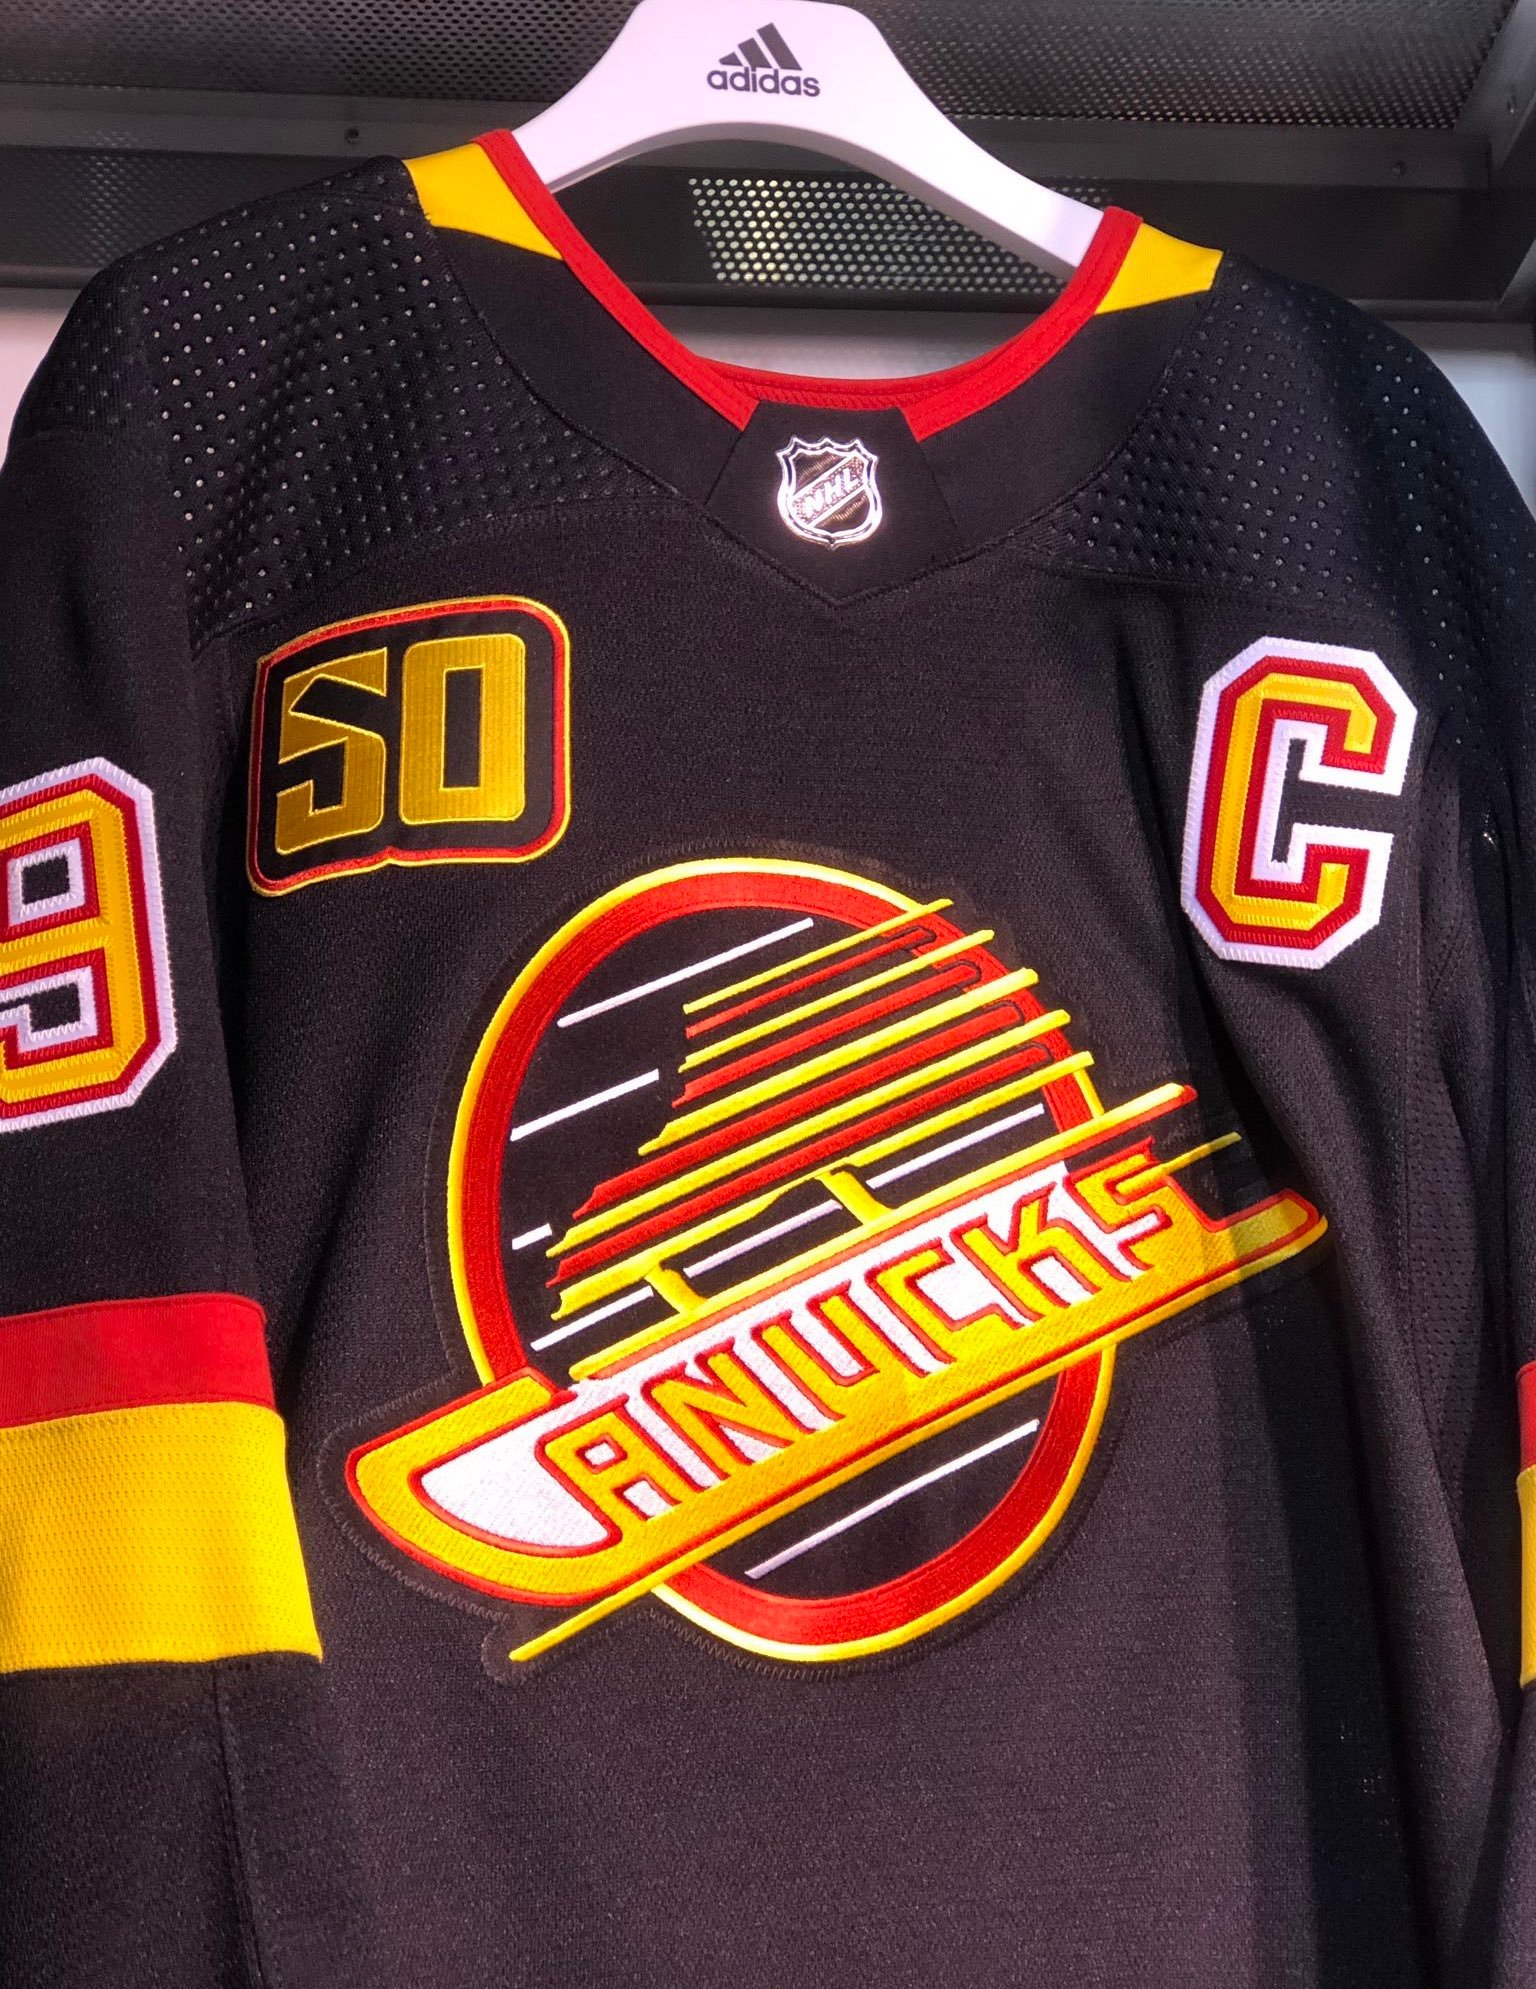 Canucks bring back 'Black Skate' jersey for 50th season